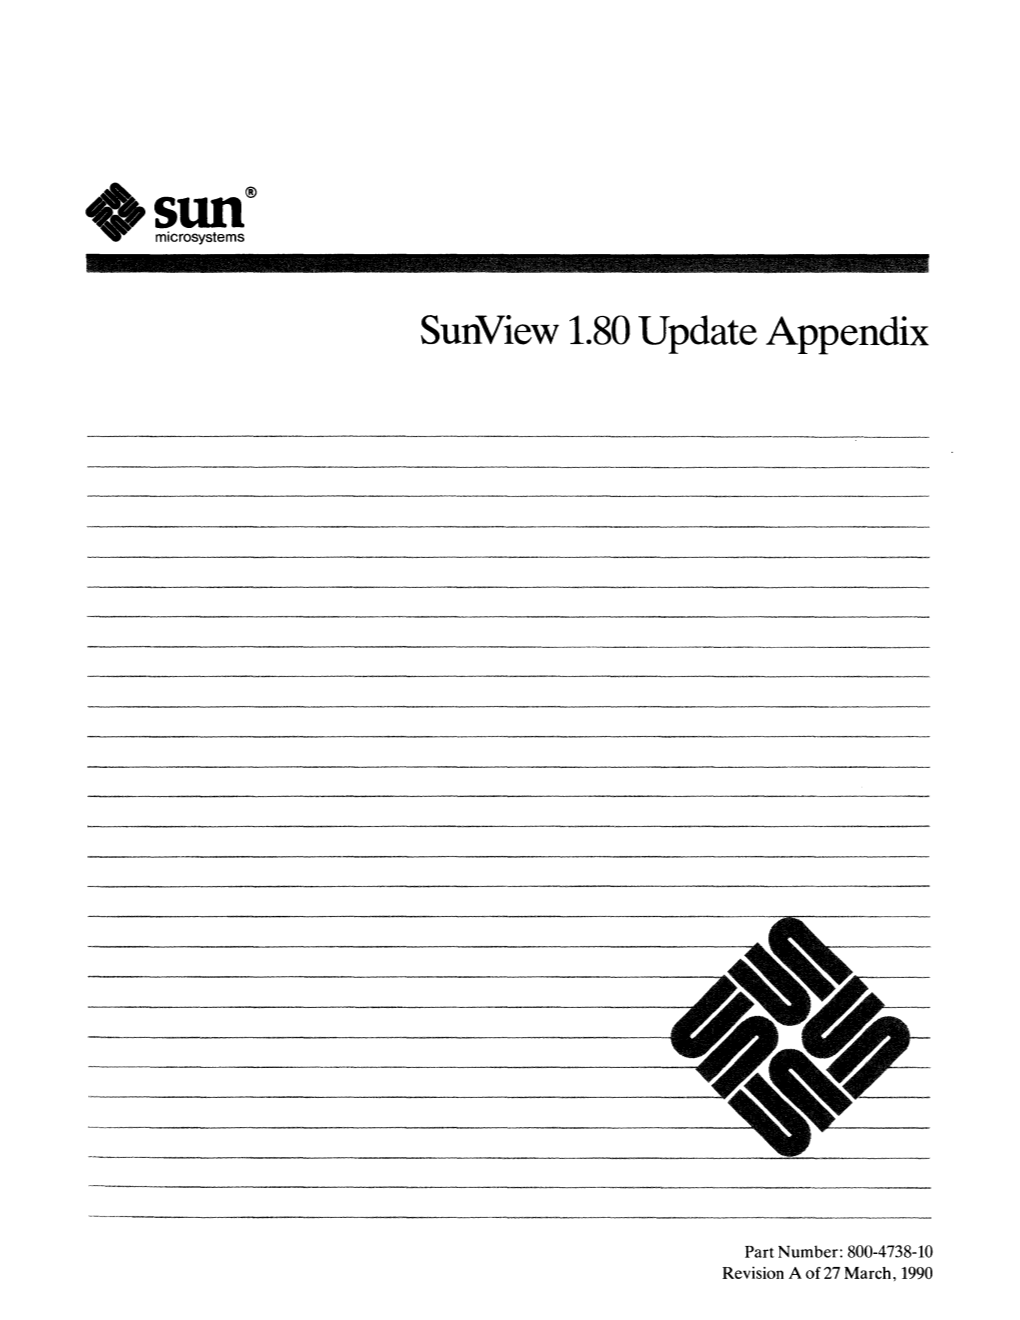 Sunview 1.80 Update Appendix